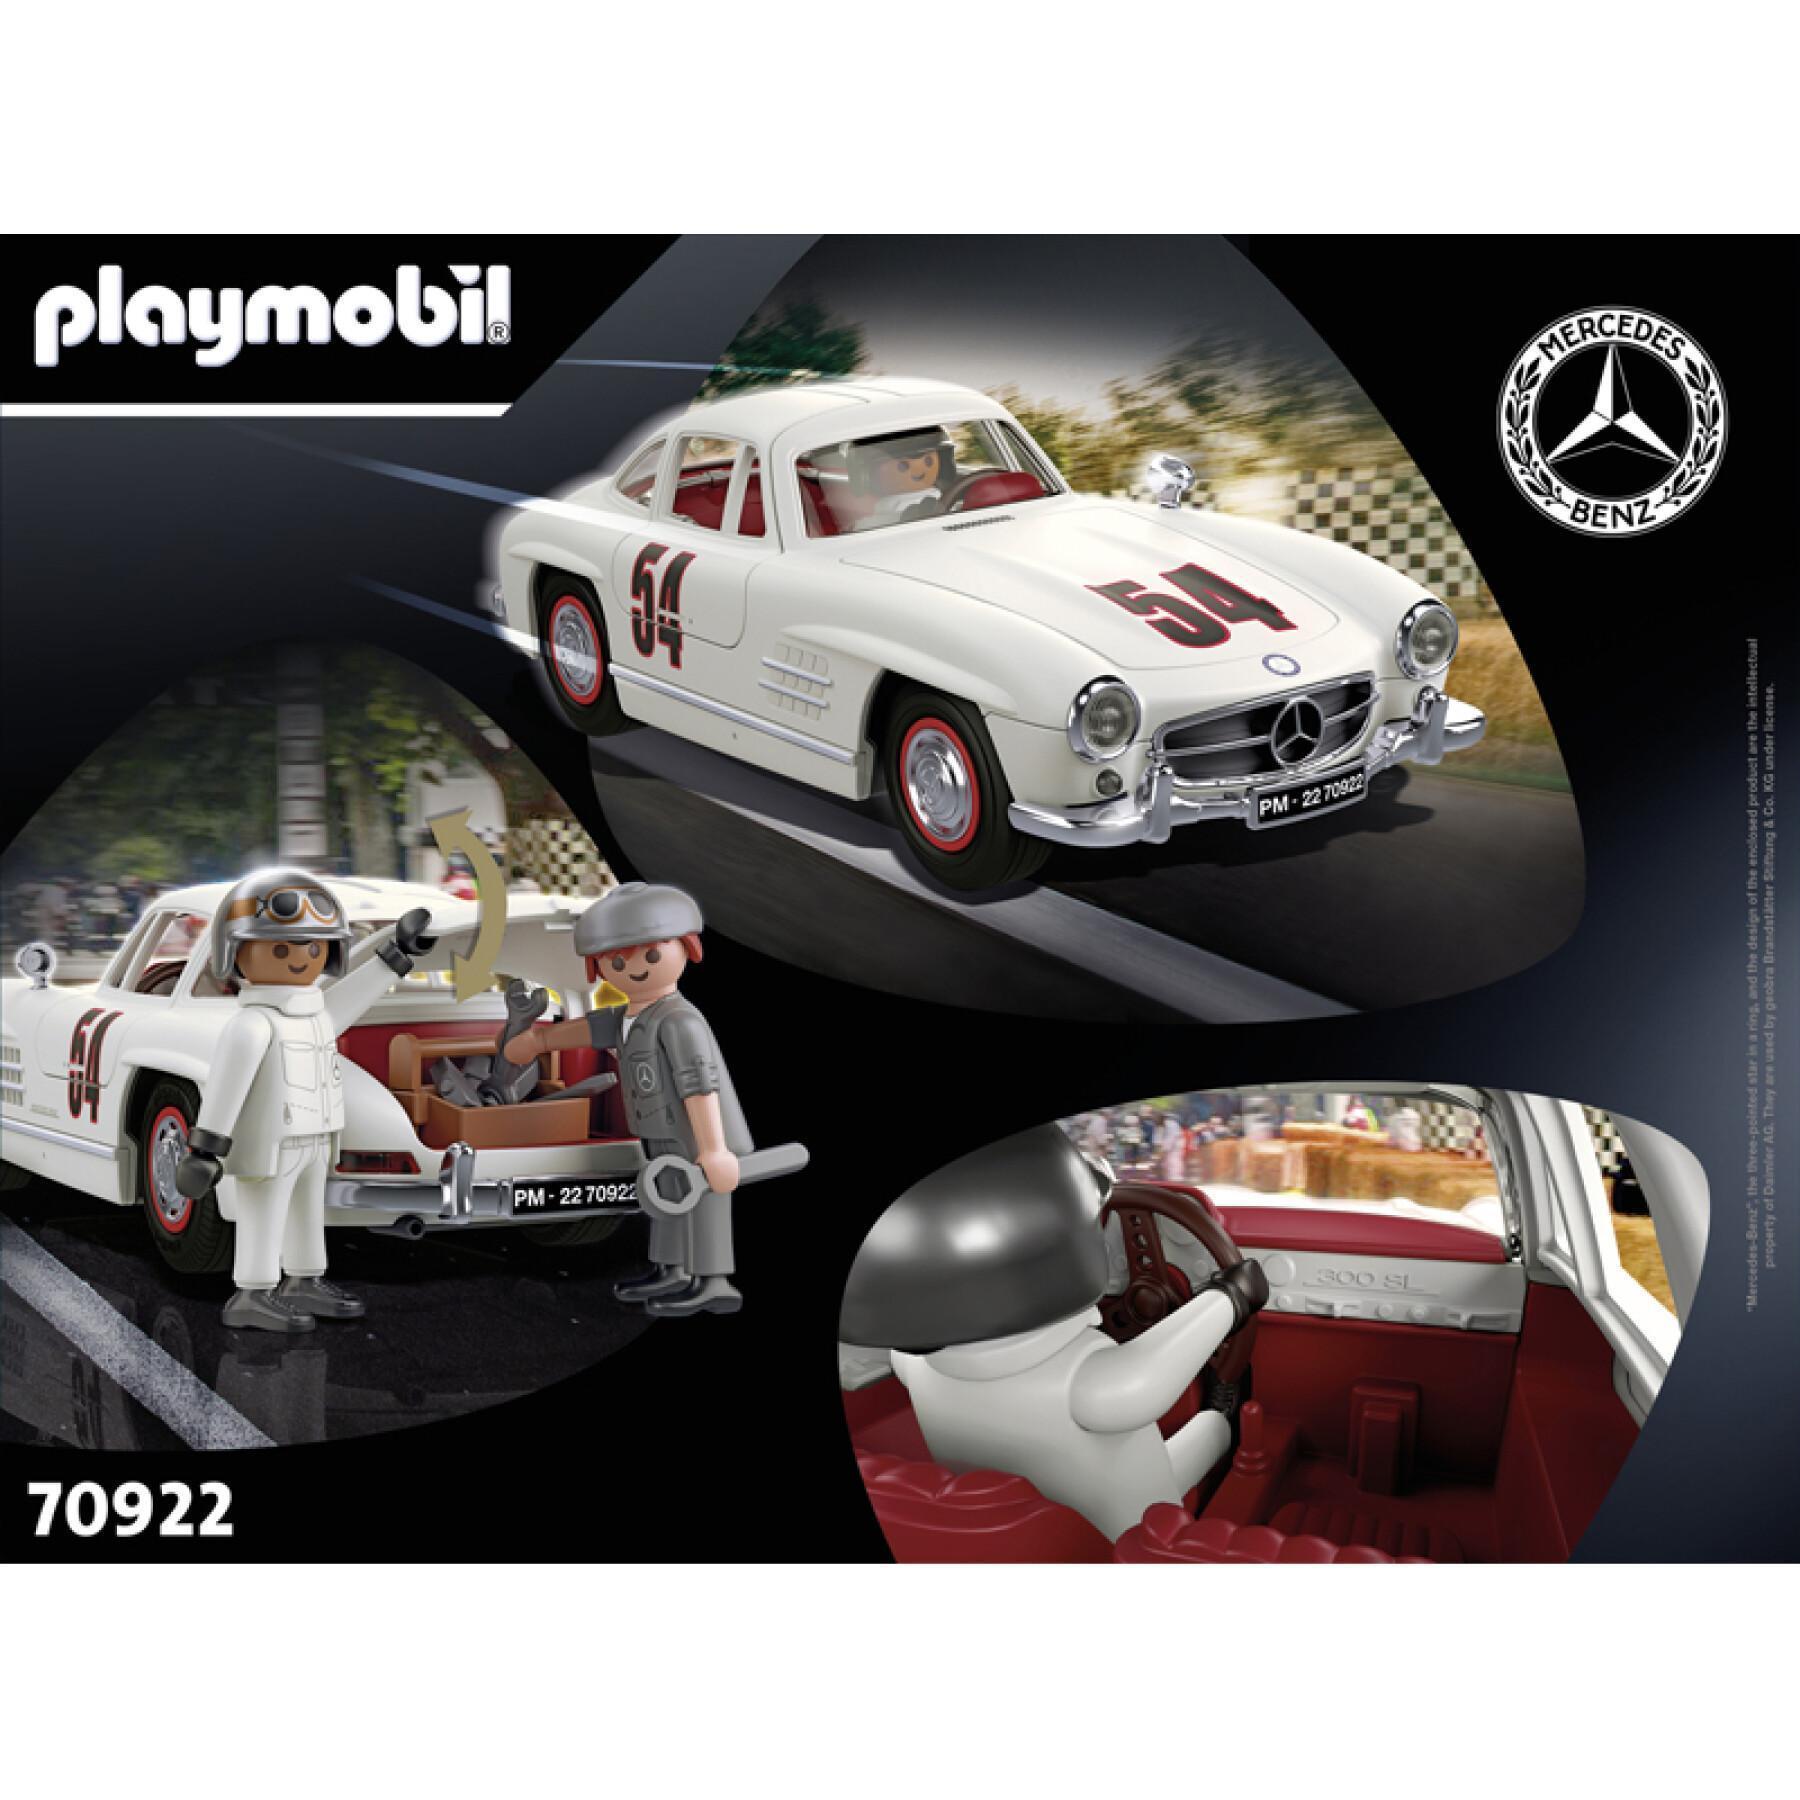 Car games Playmobil Mercedes Benz 300 Sl